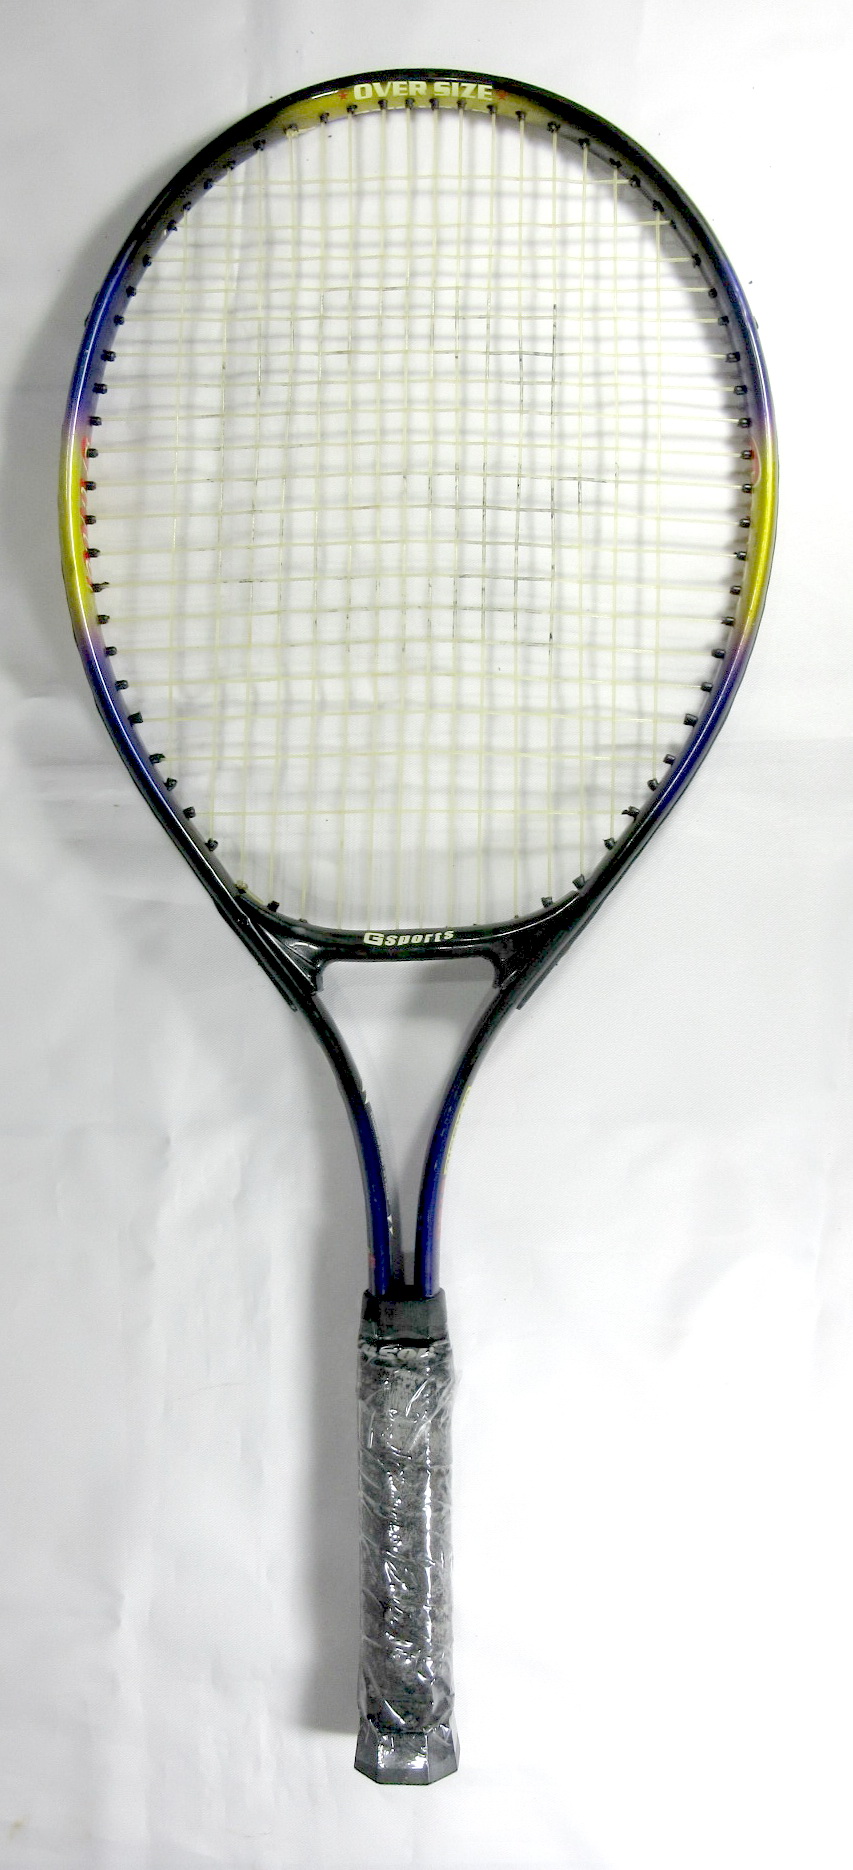 ไม้เทนนิส Gsports pro classic / tennis racket สีม่วง